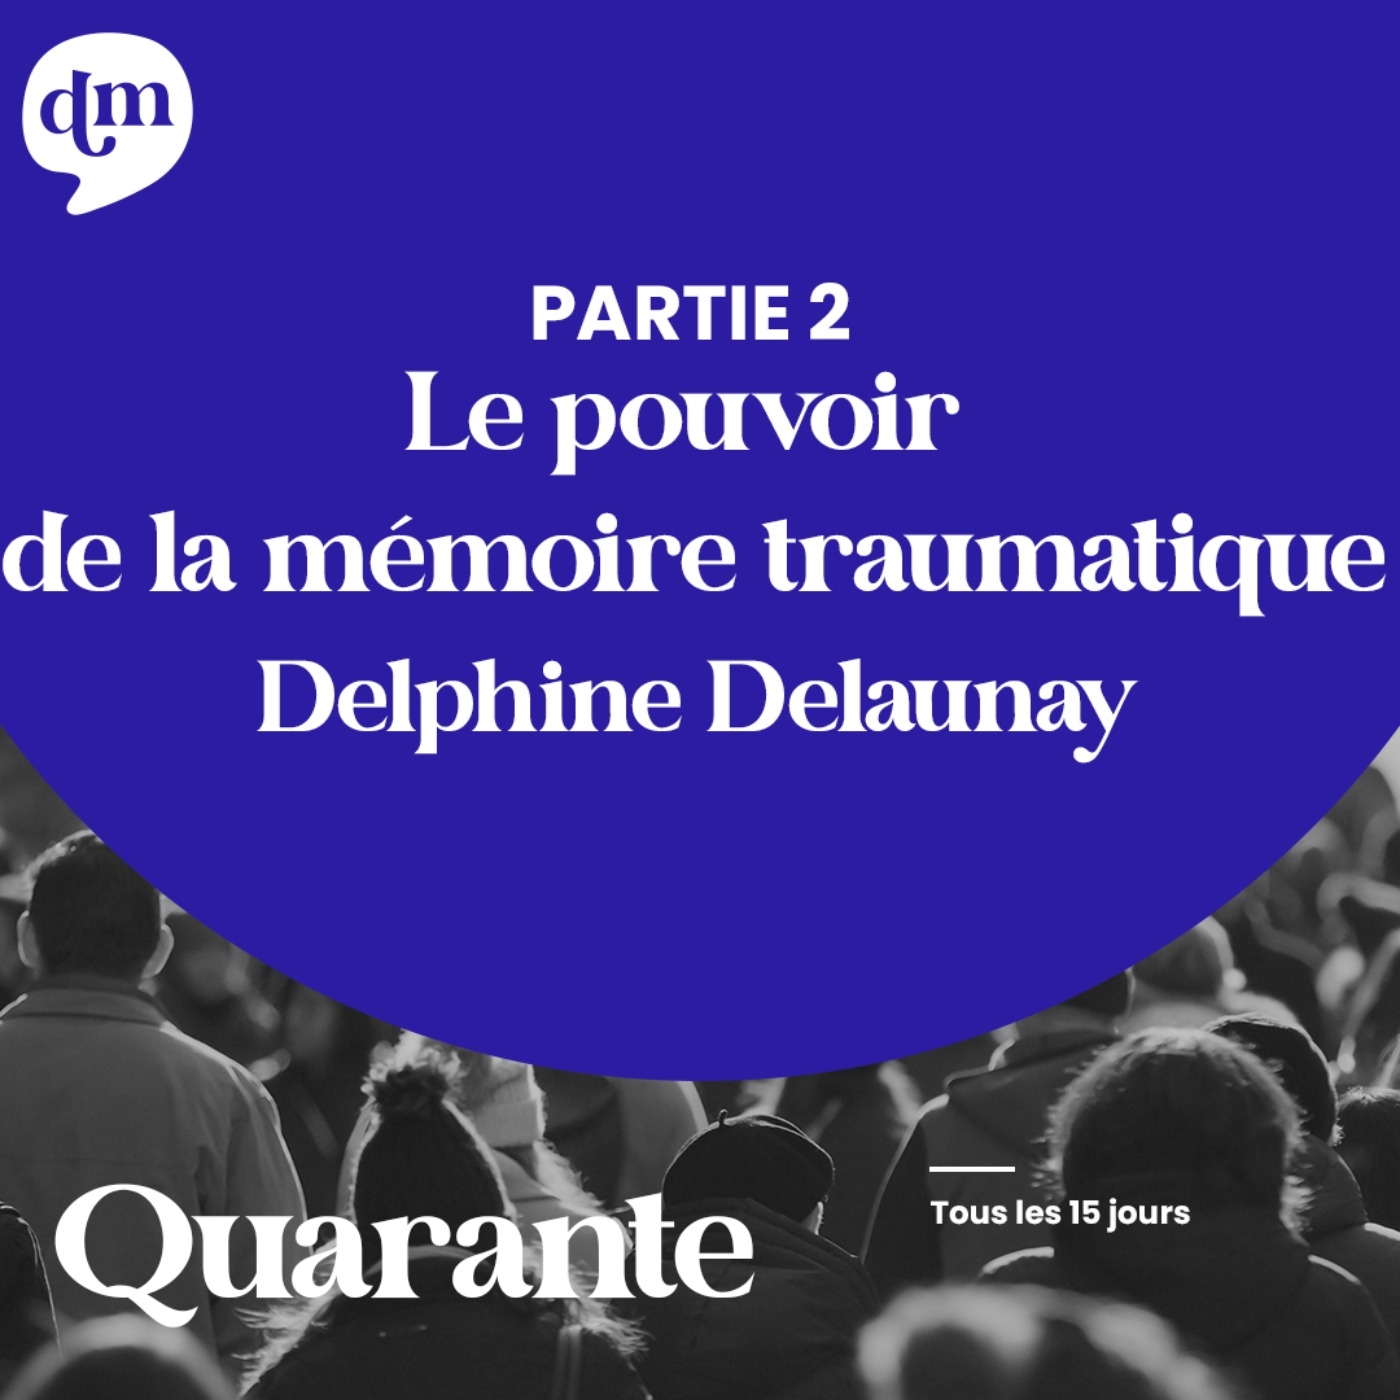 Le pouvoir de la mémoire traumatique - Delphine Delaunay - 2ème partie